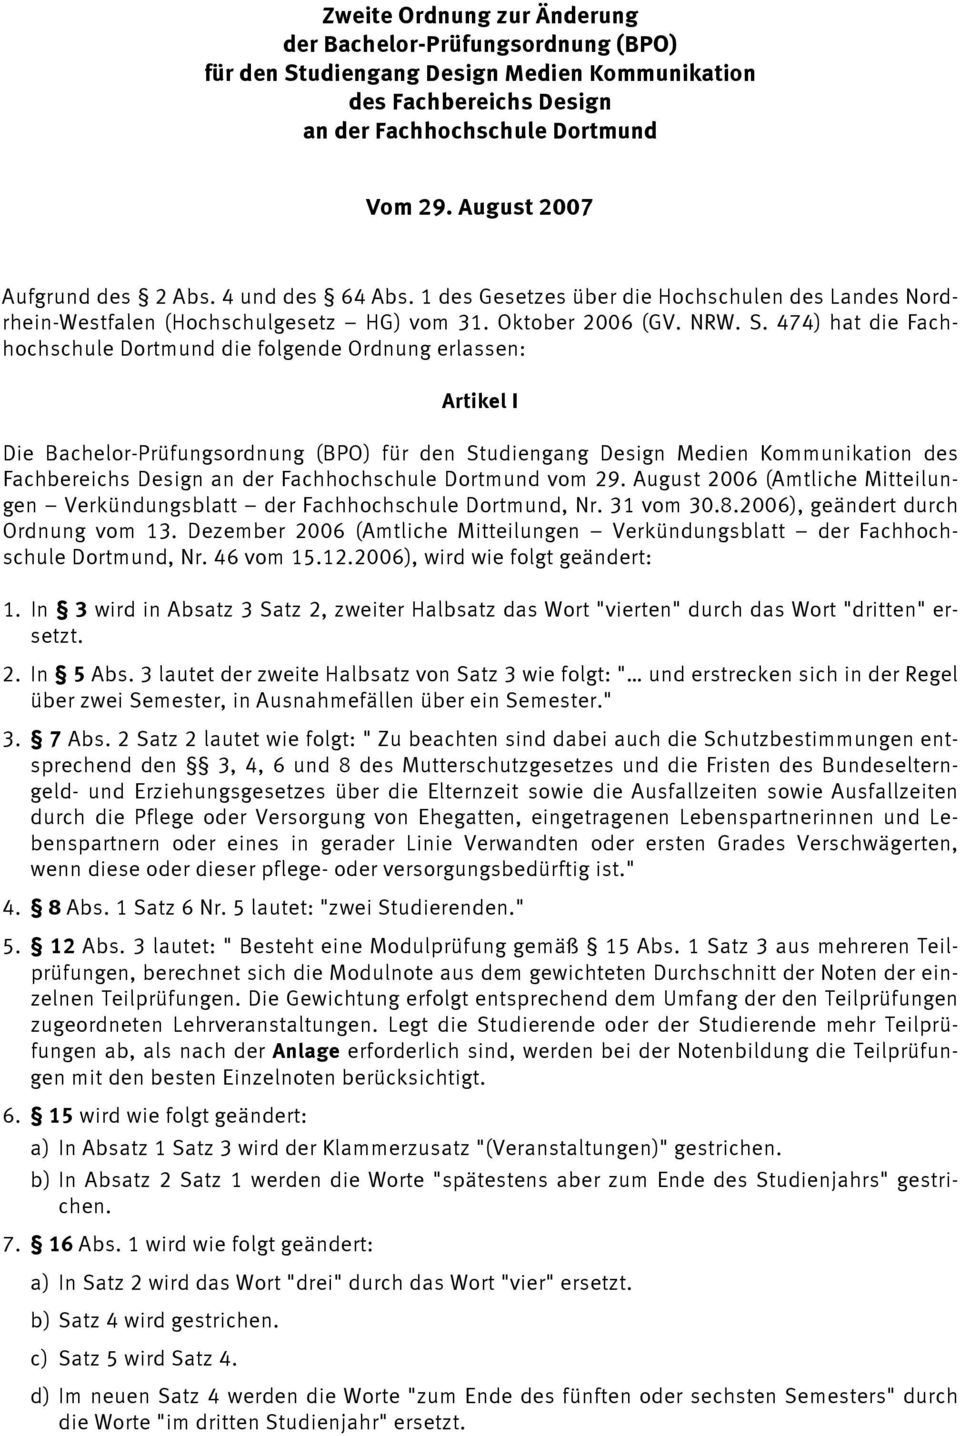 474) hat die Fachhochschule Dortmund die folgende Ordnung erlassen: Artikel I Die Bachelor-Prüfungsordnung (BPO) für den Studiengang Design Medien Kommunikation des Fachbereichs Design an der